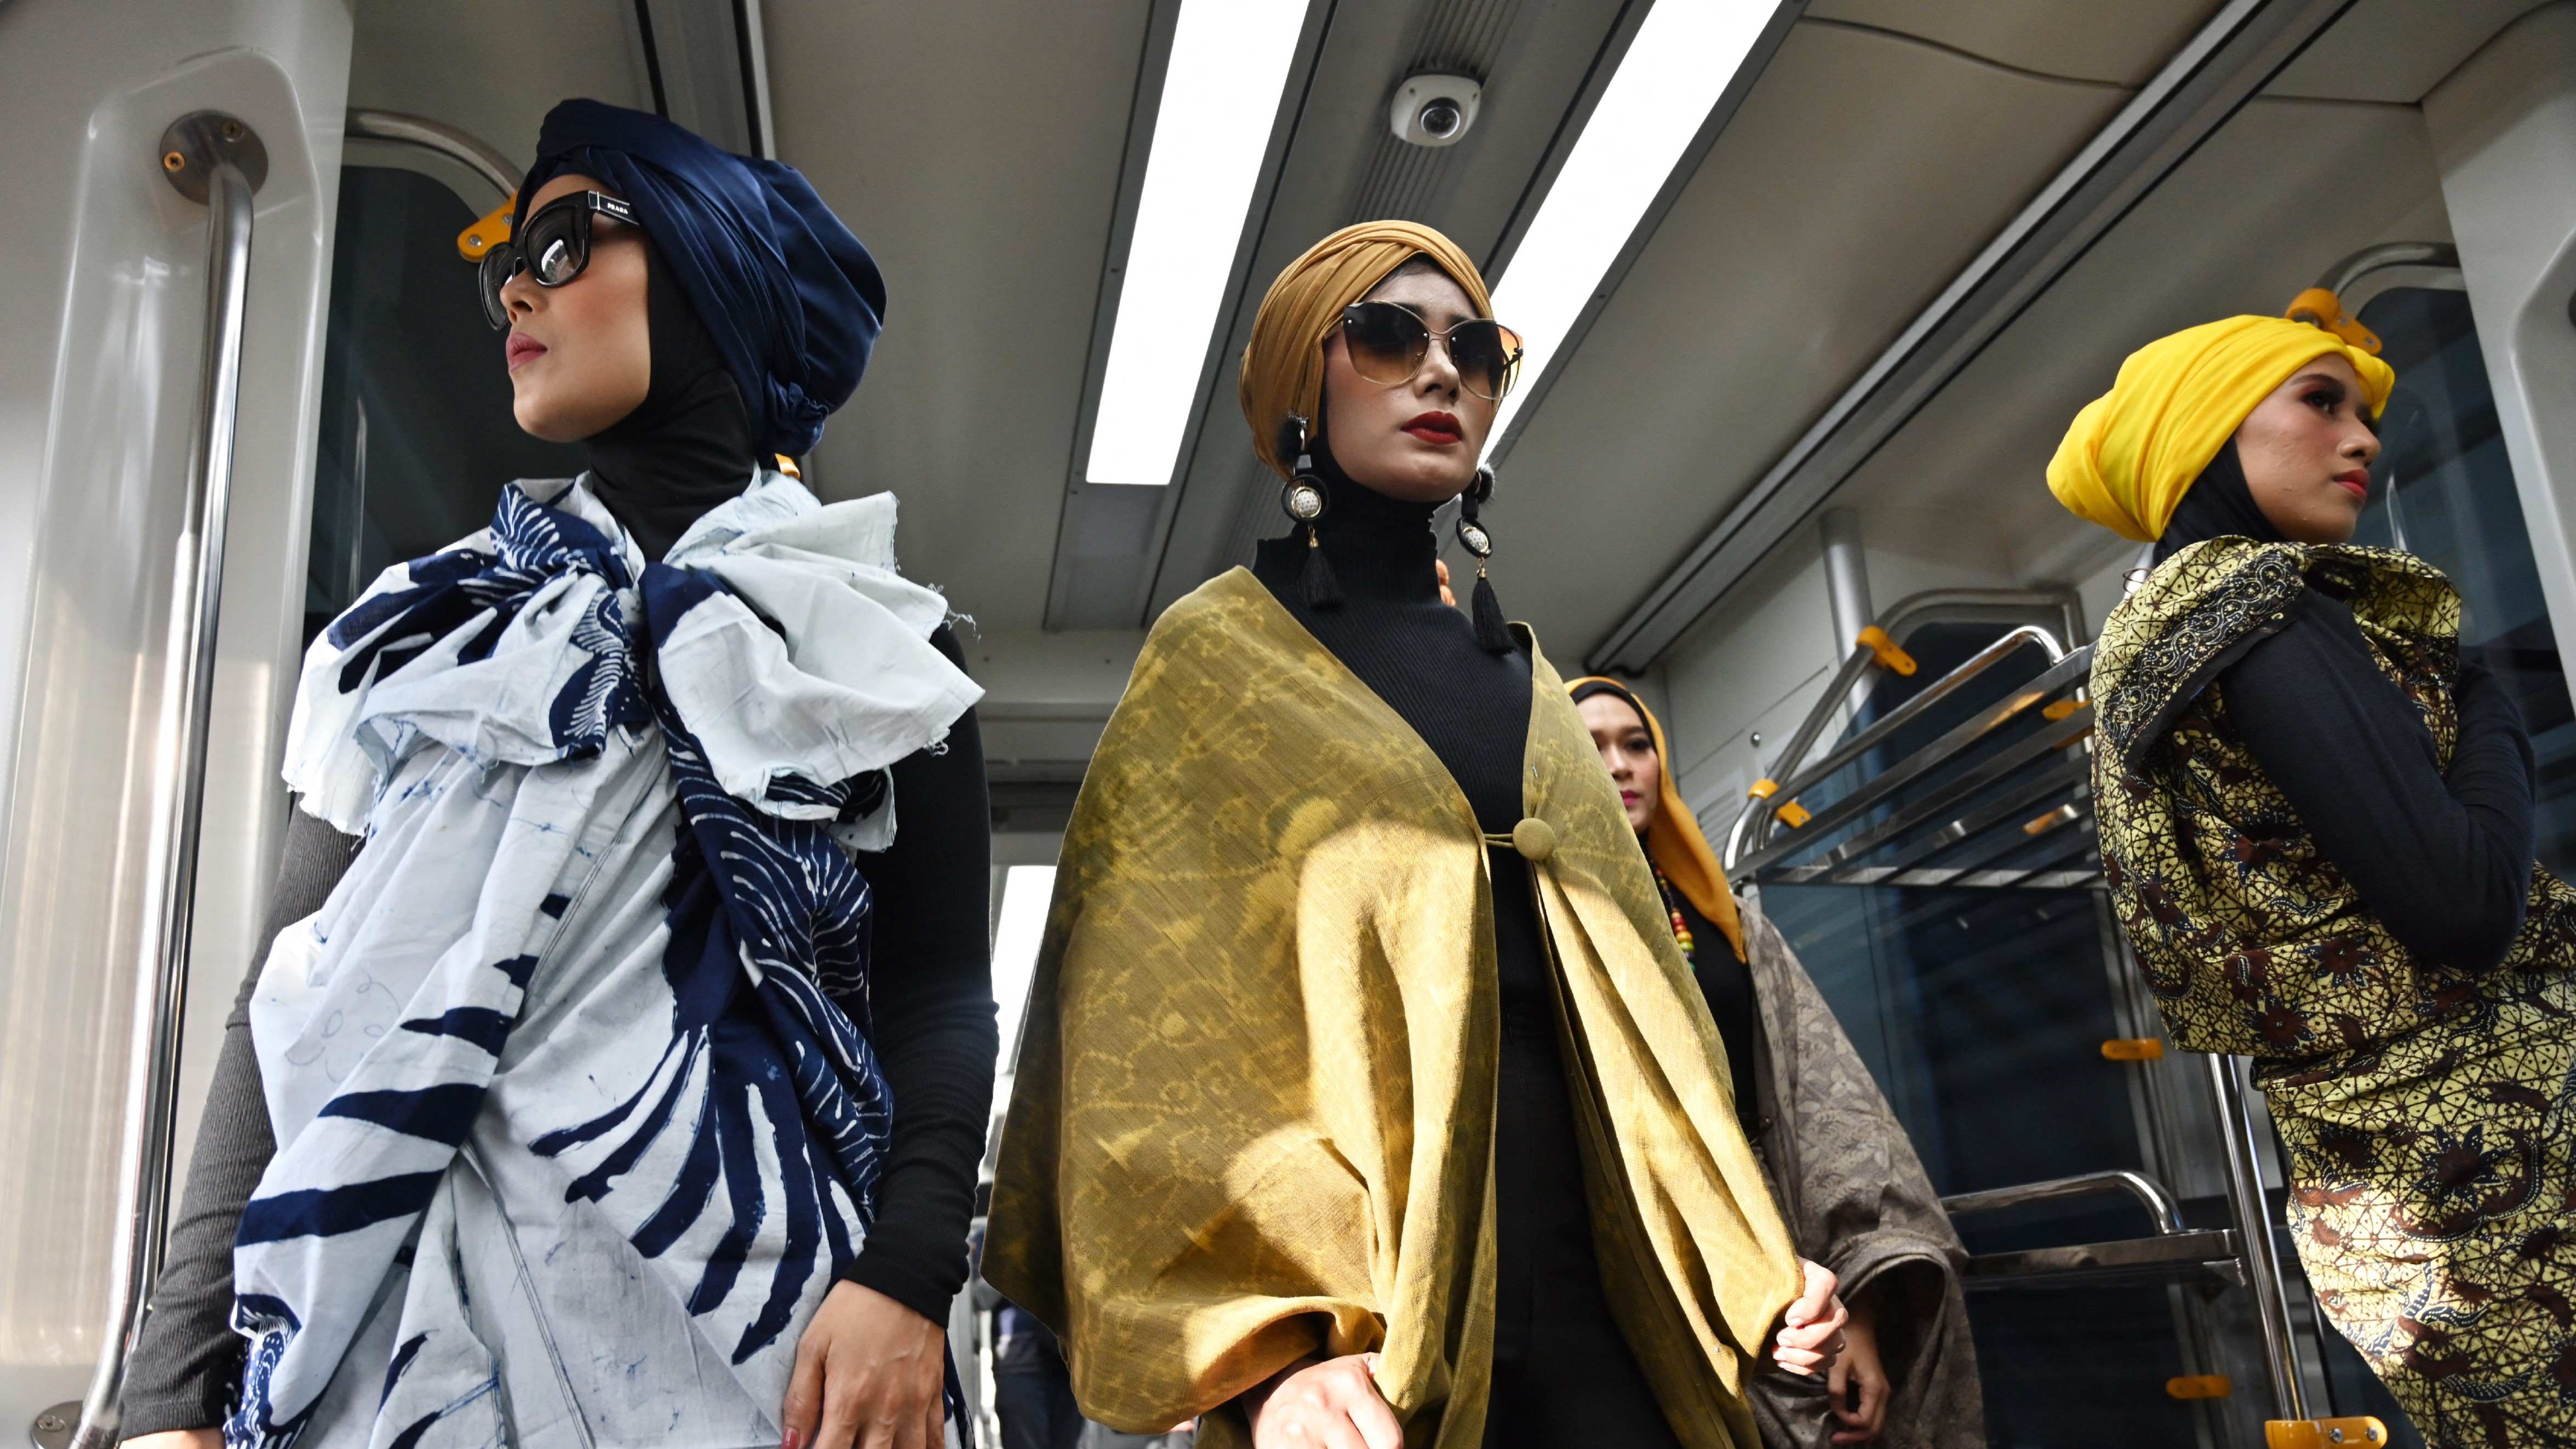 Women Western Wear Market Trend Is Booming Worldwide: Gucci